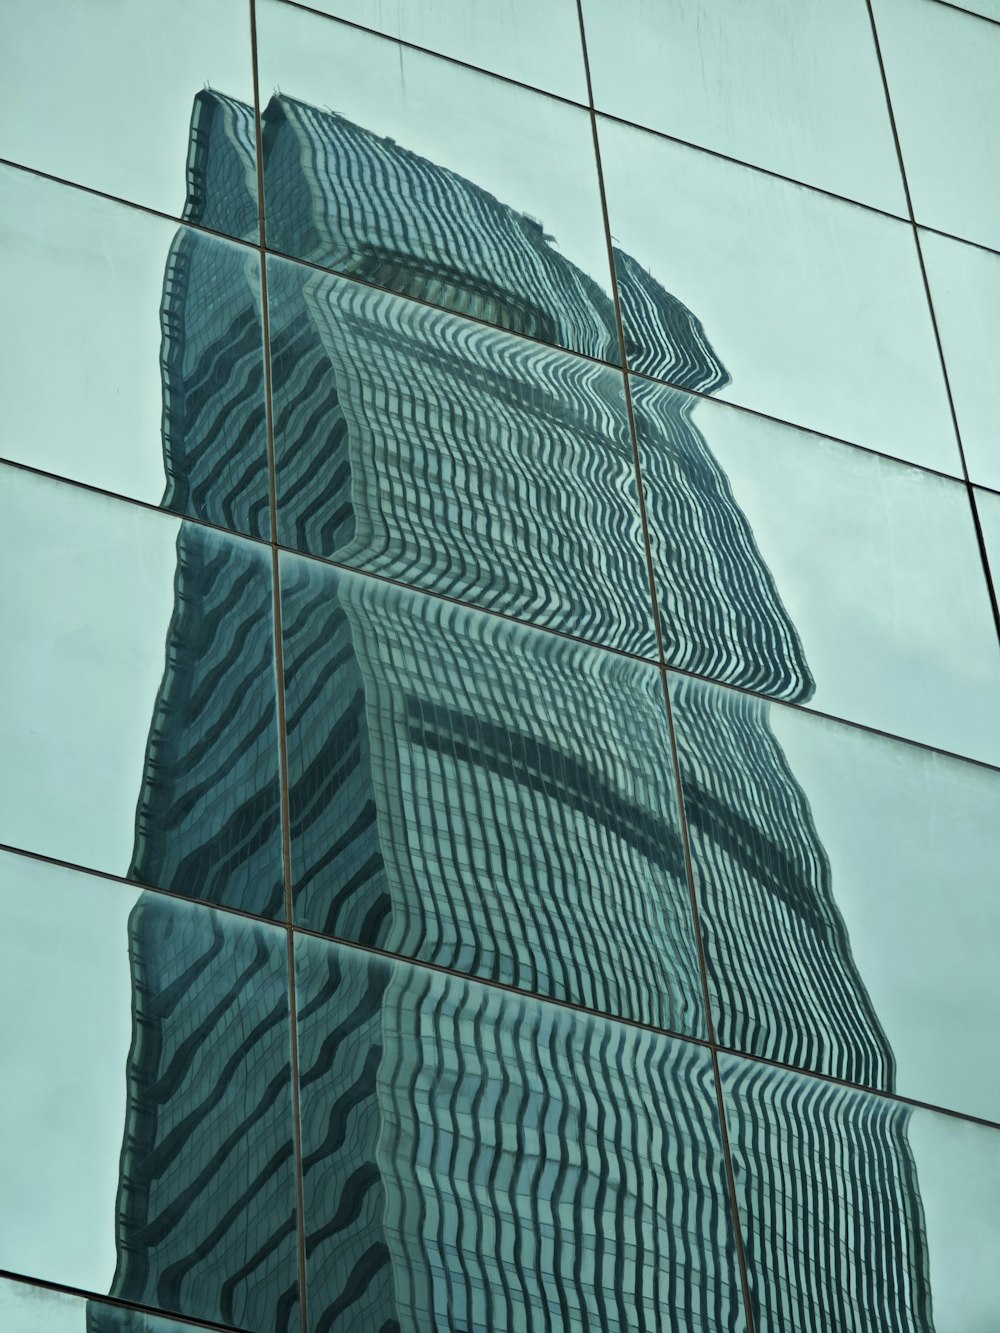 Die Spiegelung eines Gebäudes im Glas eines anderen Gebäudes